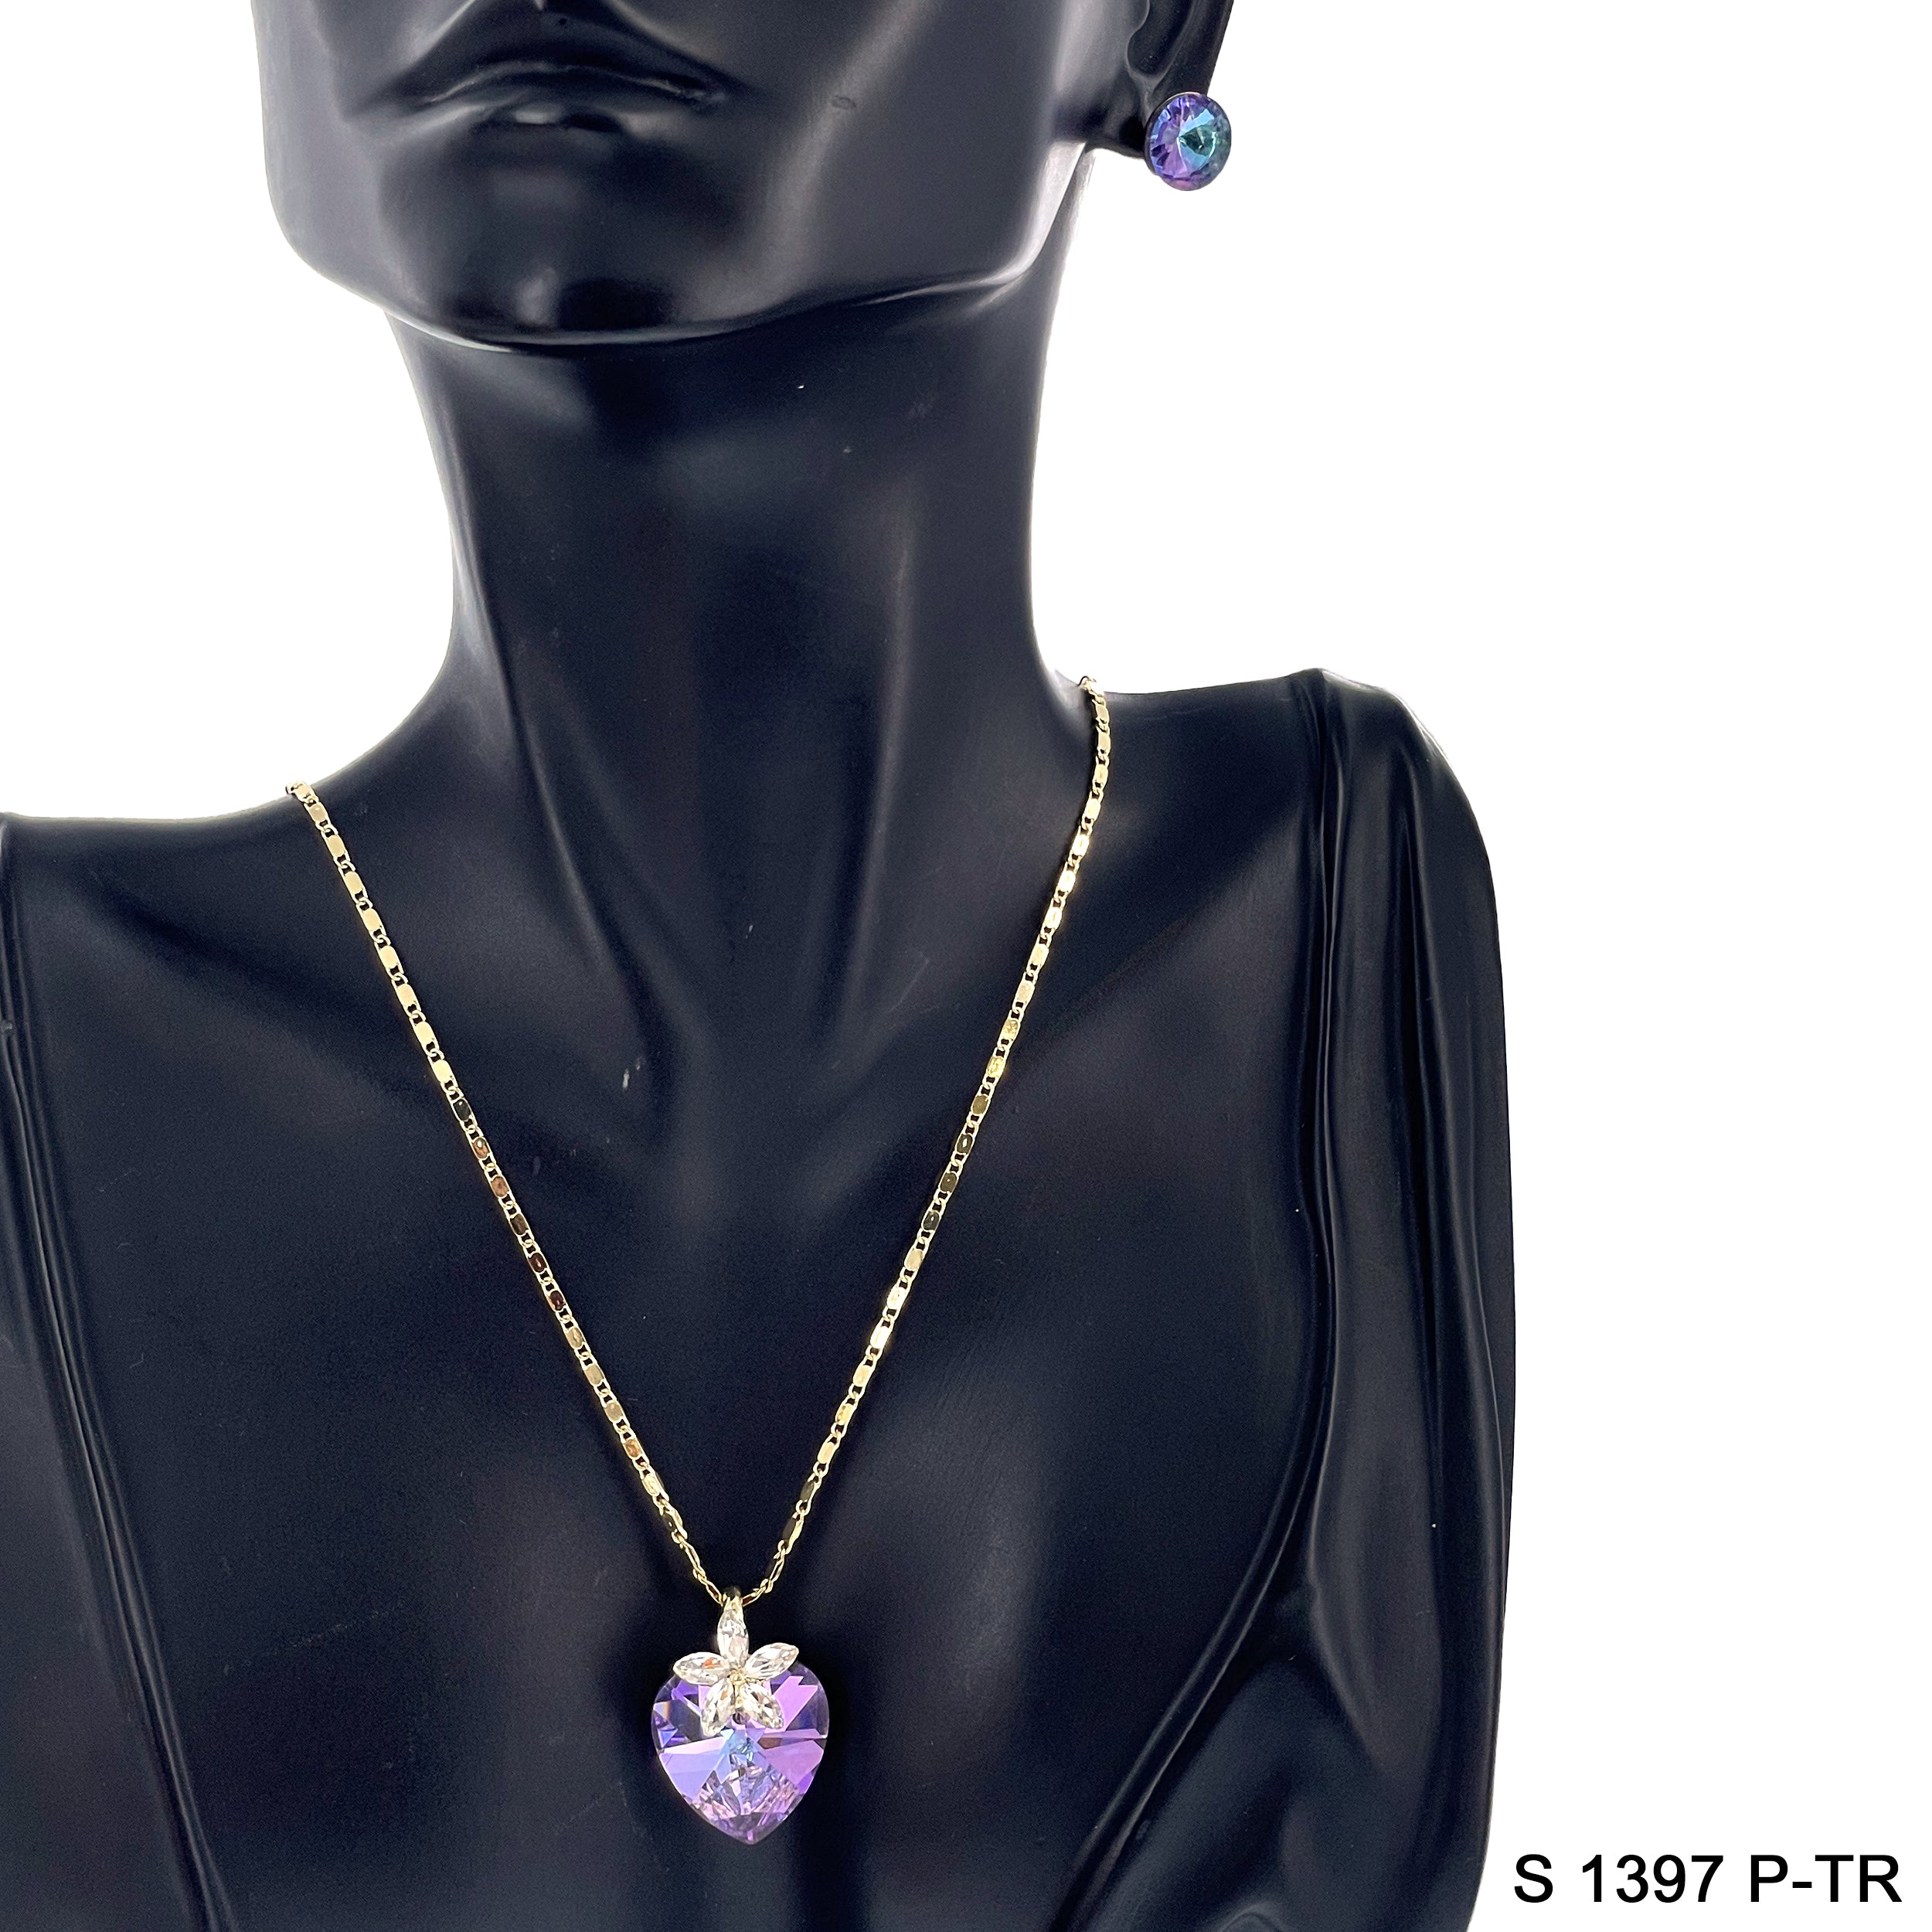 Heart Flower Pendant Necklace Set S 1397 P-TR